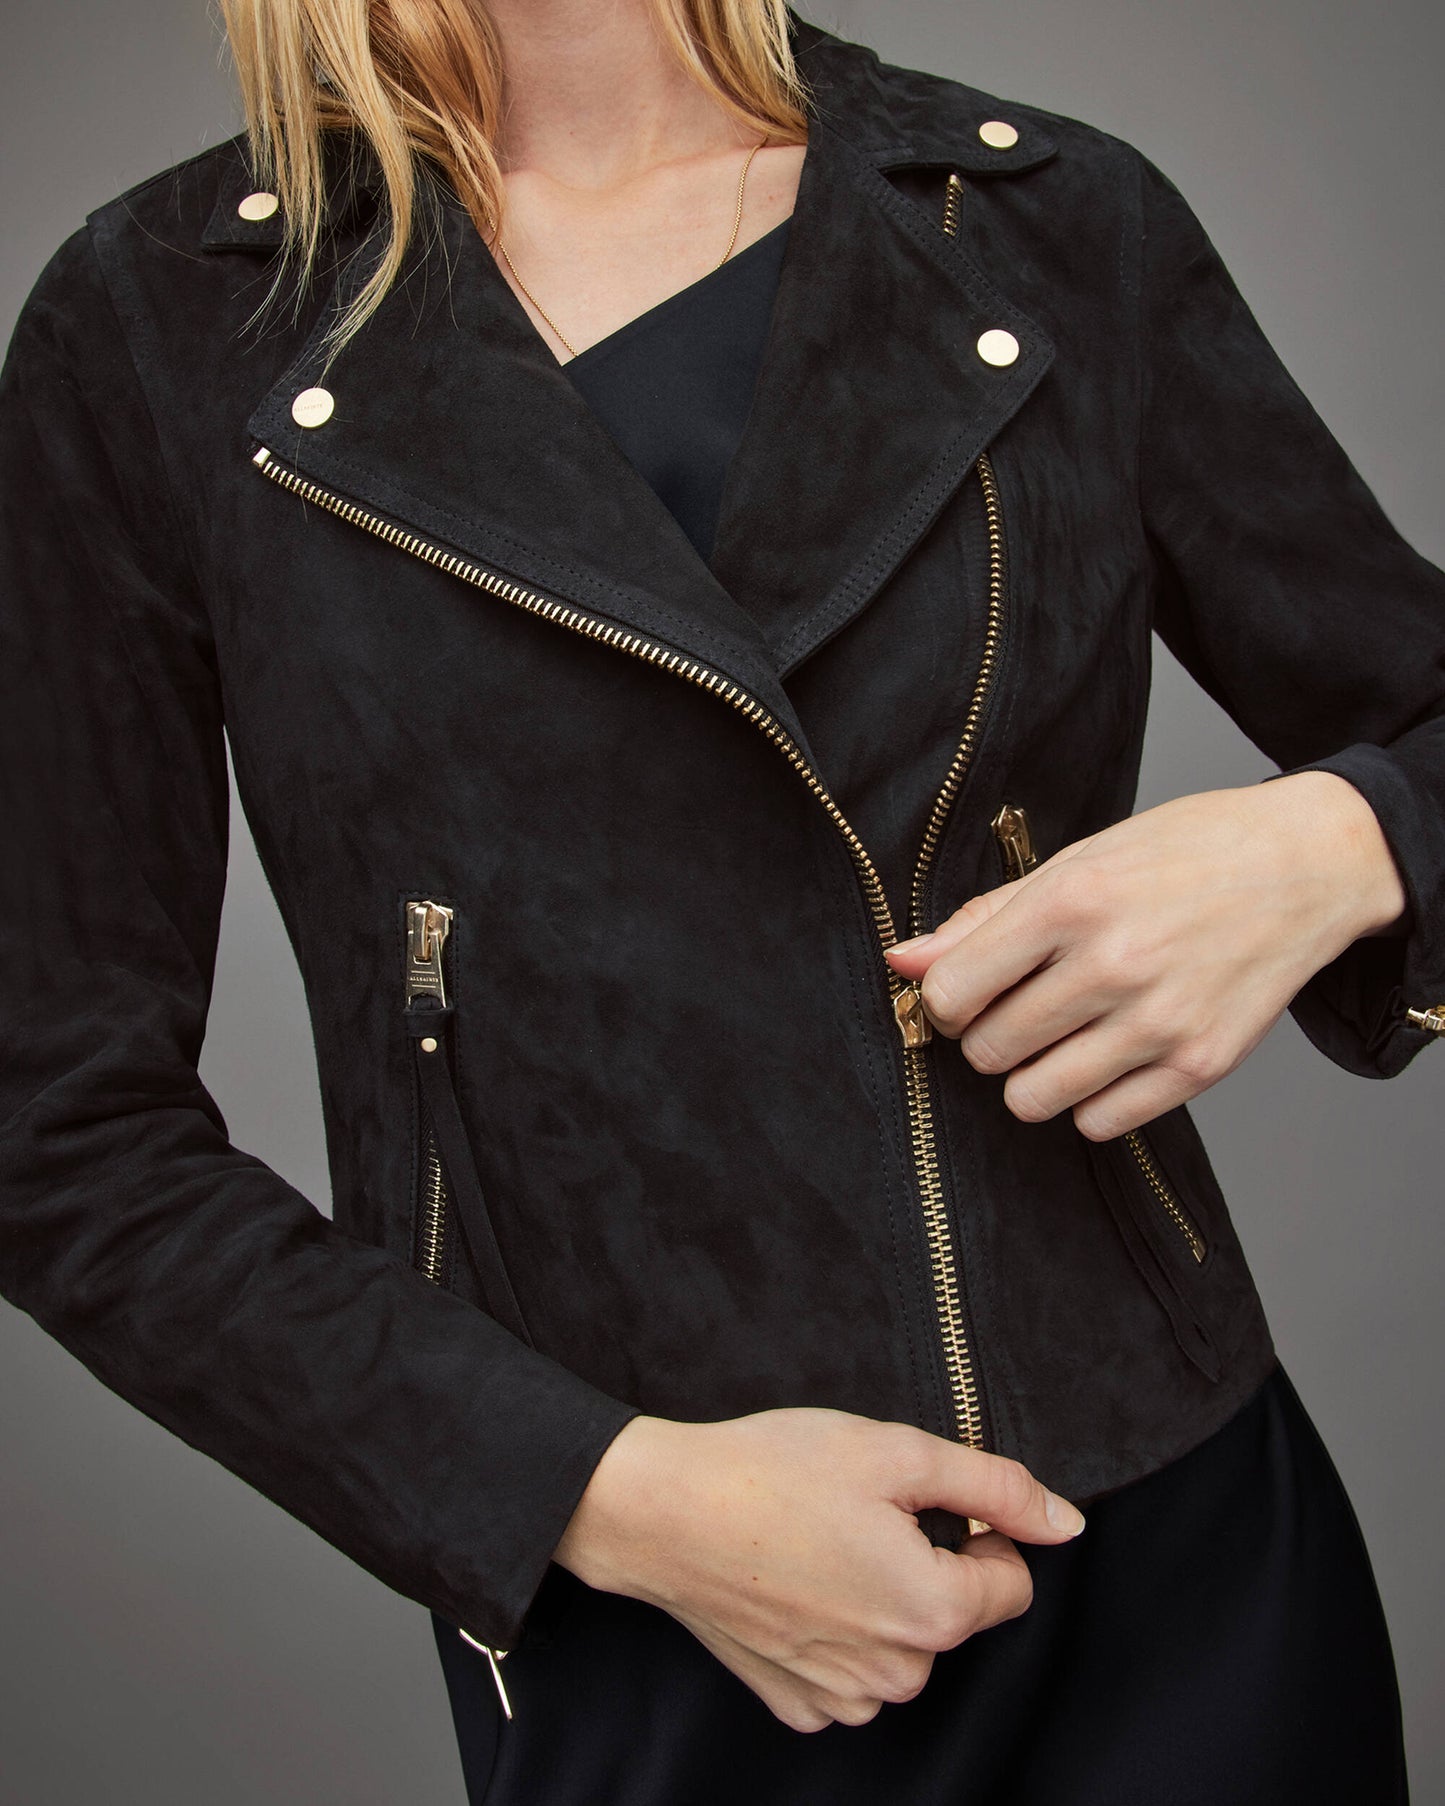 Women's Suede Leather Biker Jacket In Black